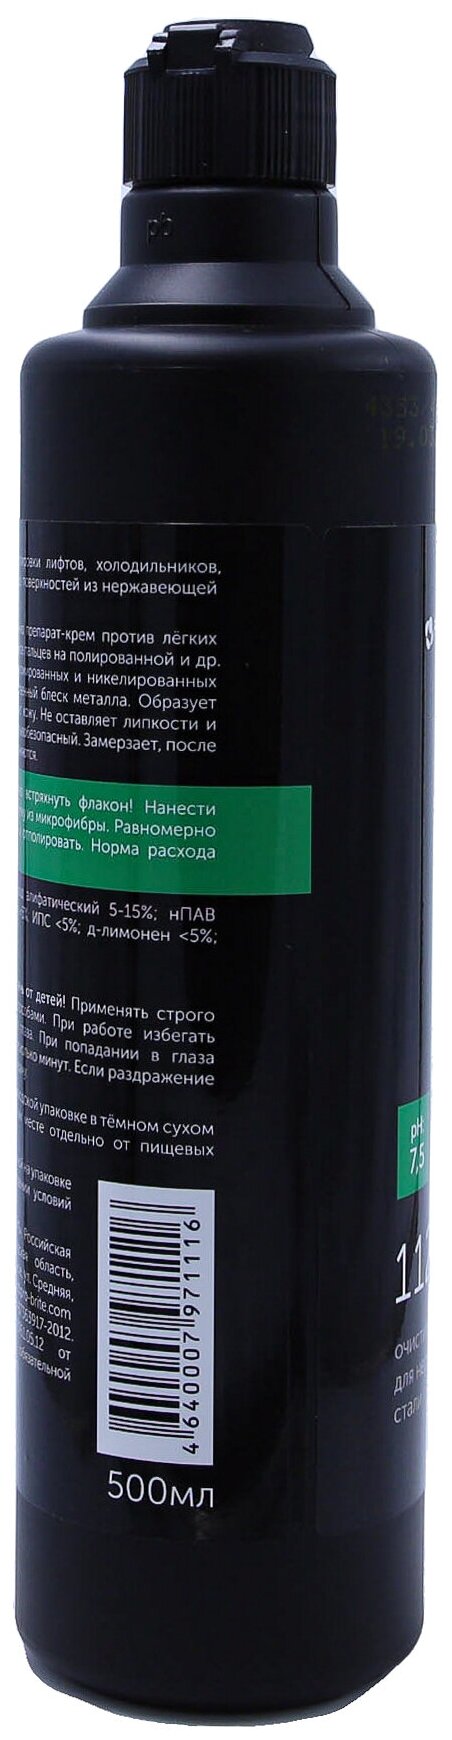 Очиститель-полироль для нержавеющей стали OLEX-1 0,5 л, средство против загрязнений и отпечатков пальцев, 5 шт. - фотография № 15